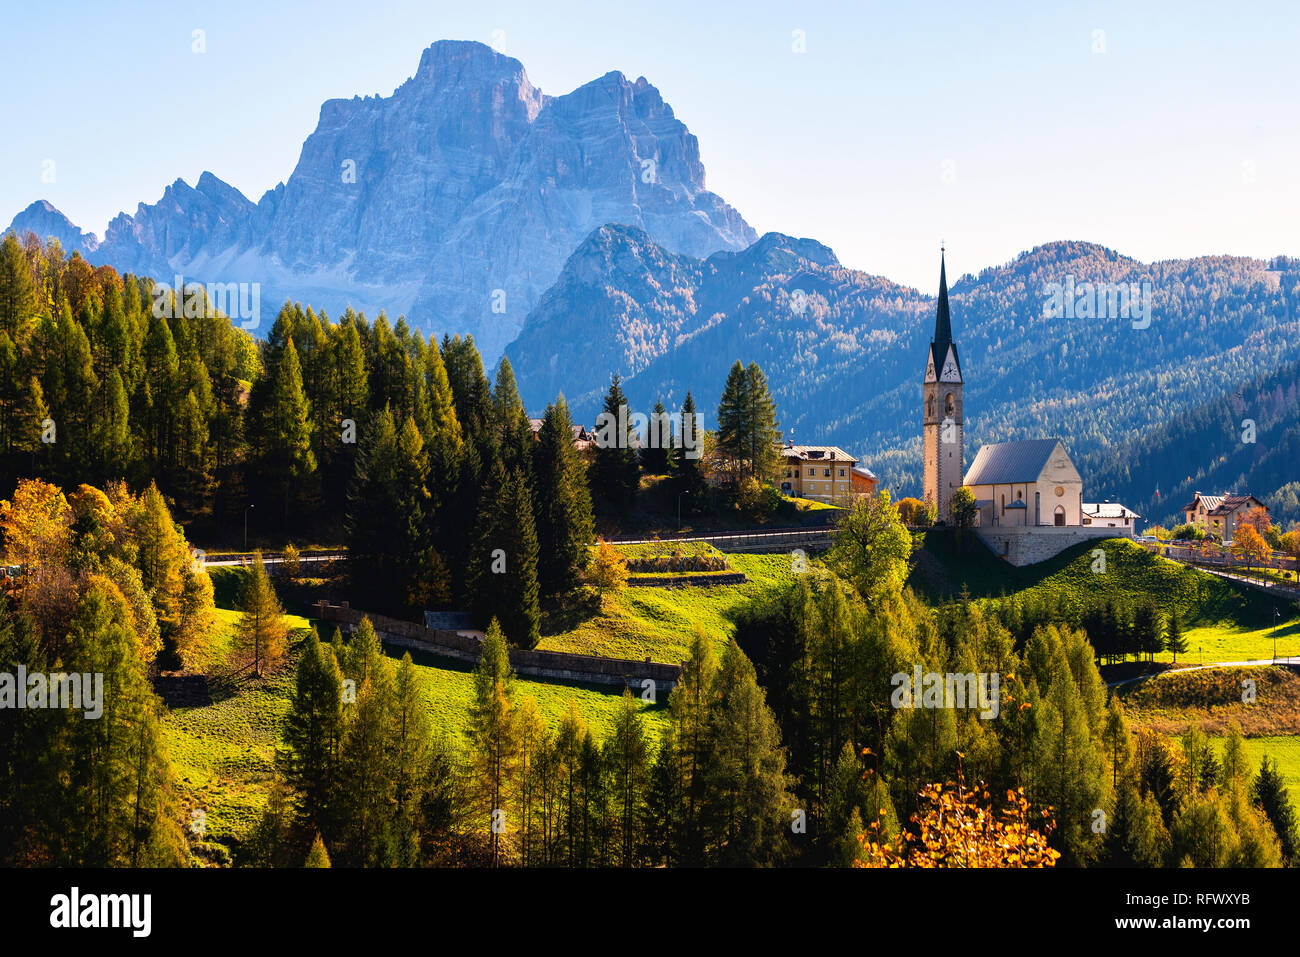 The church of Selva di Cadore and Mount Pelmo, Dolomites, UNESCO World Heritage Site, Belluno province, Veneto, Italy, Europe Stock Photo